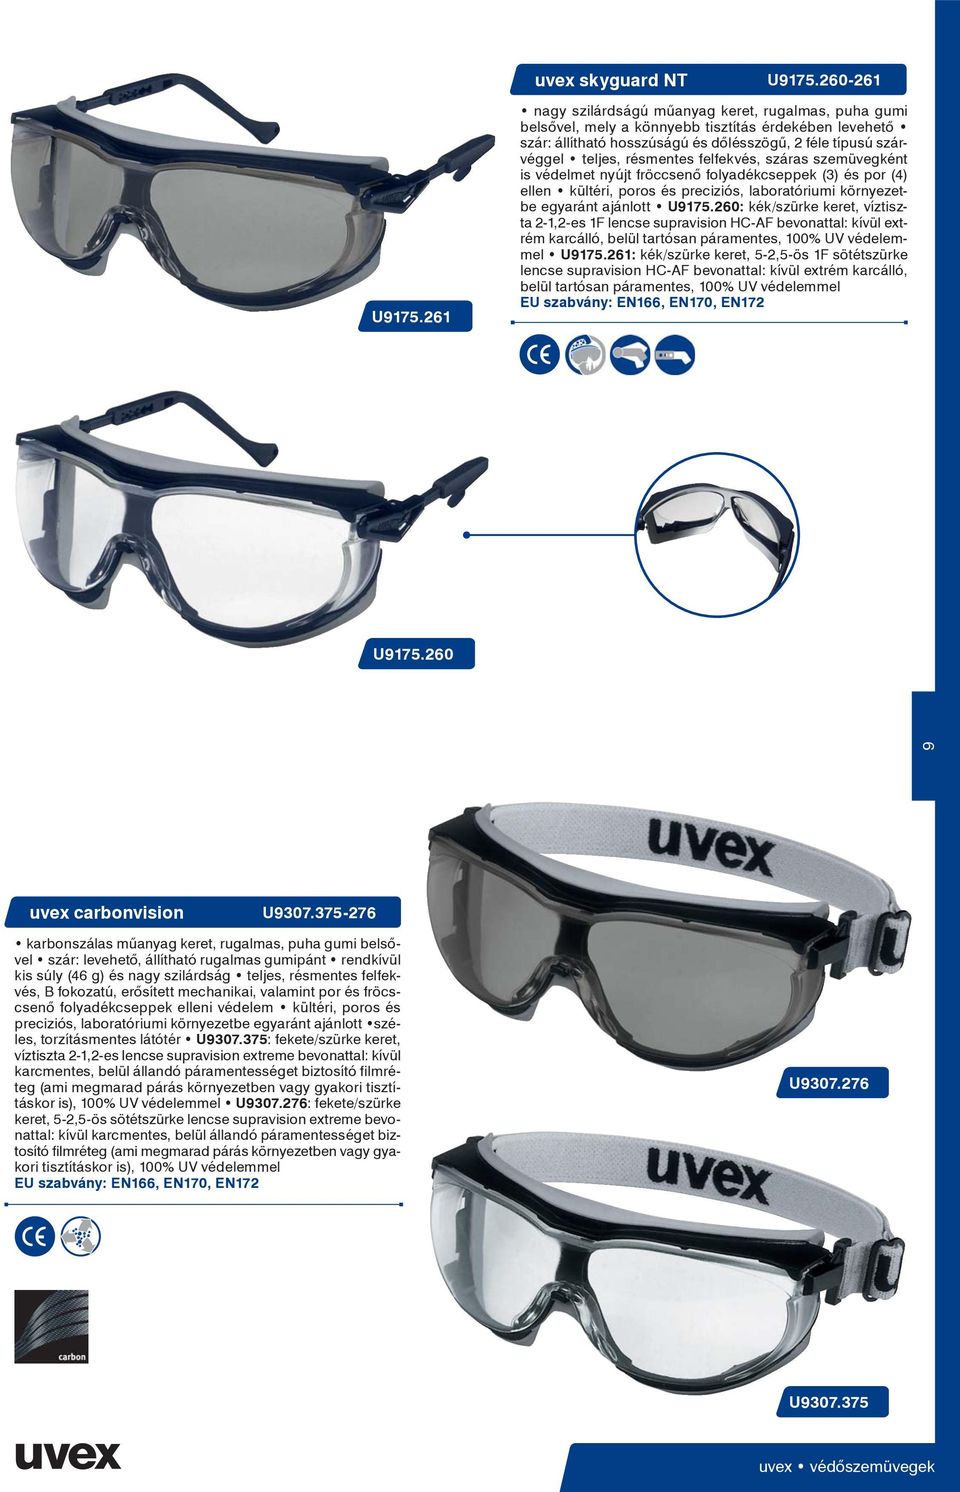 felfekvés, száras szemüvegként is védelmet nyújt fröccsenő folyadékcseppek (3) és por (4) ellen kültéri, poros és preciziós, laboratóriumi környezetbe egyaránt ajánlott U9175.